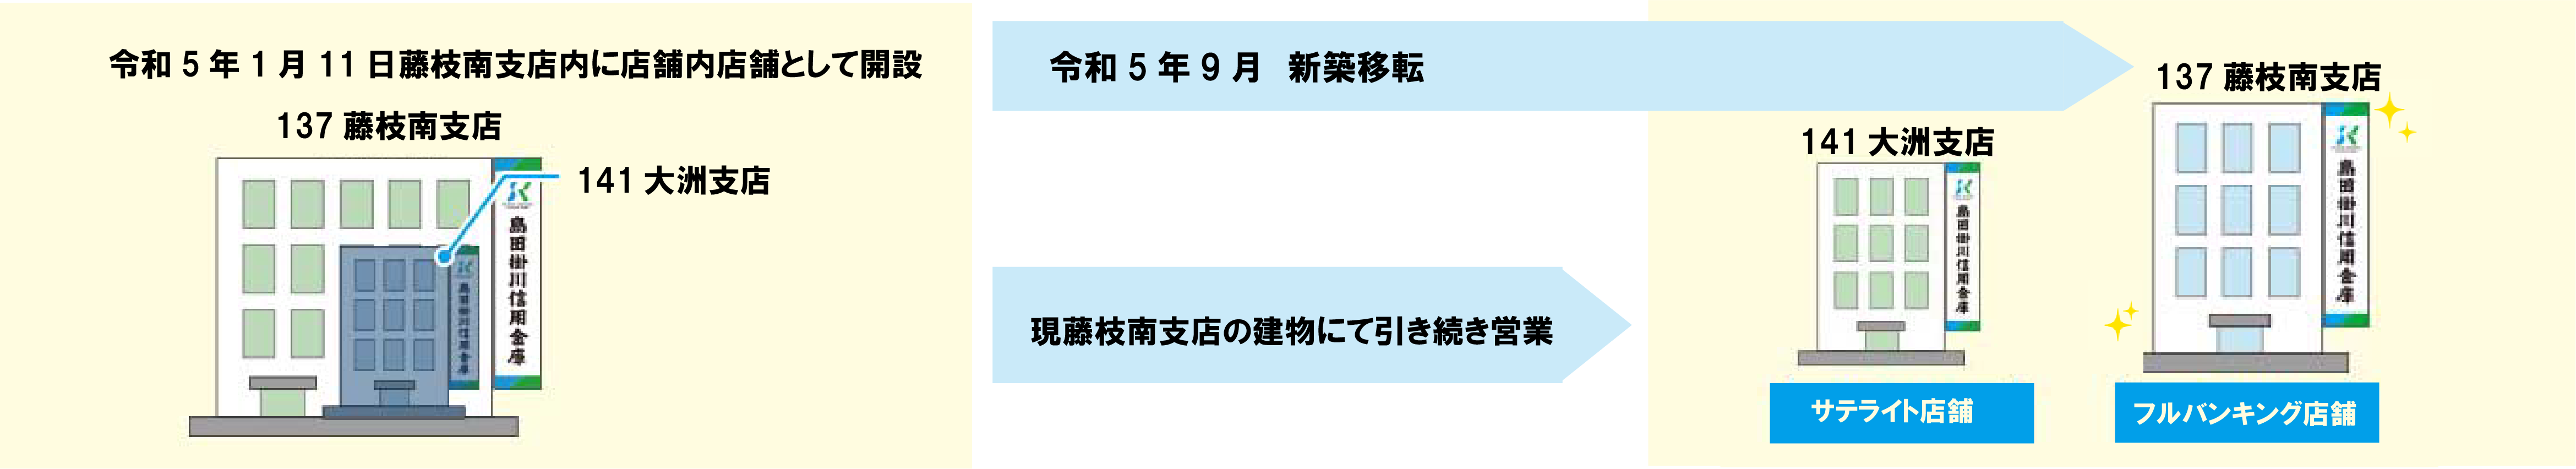 137 藤枝南支店 141 大洲支店 令和5年9月4日新築移転予定